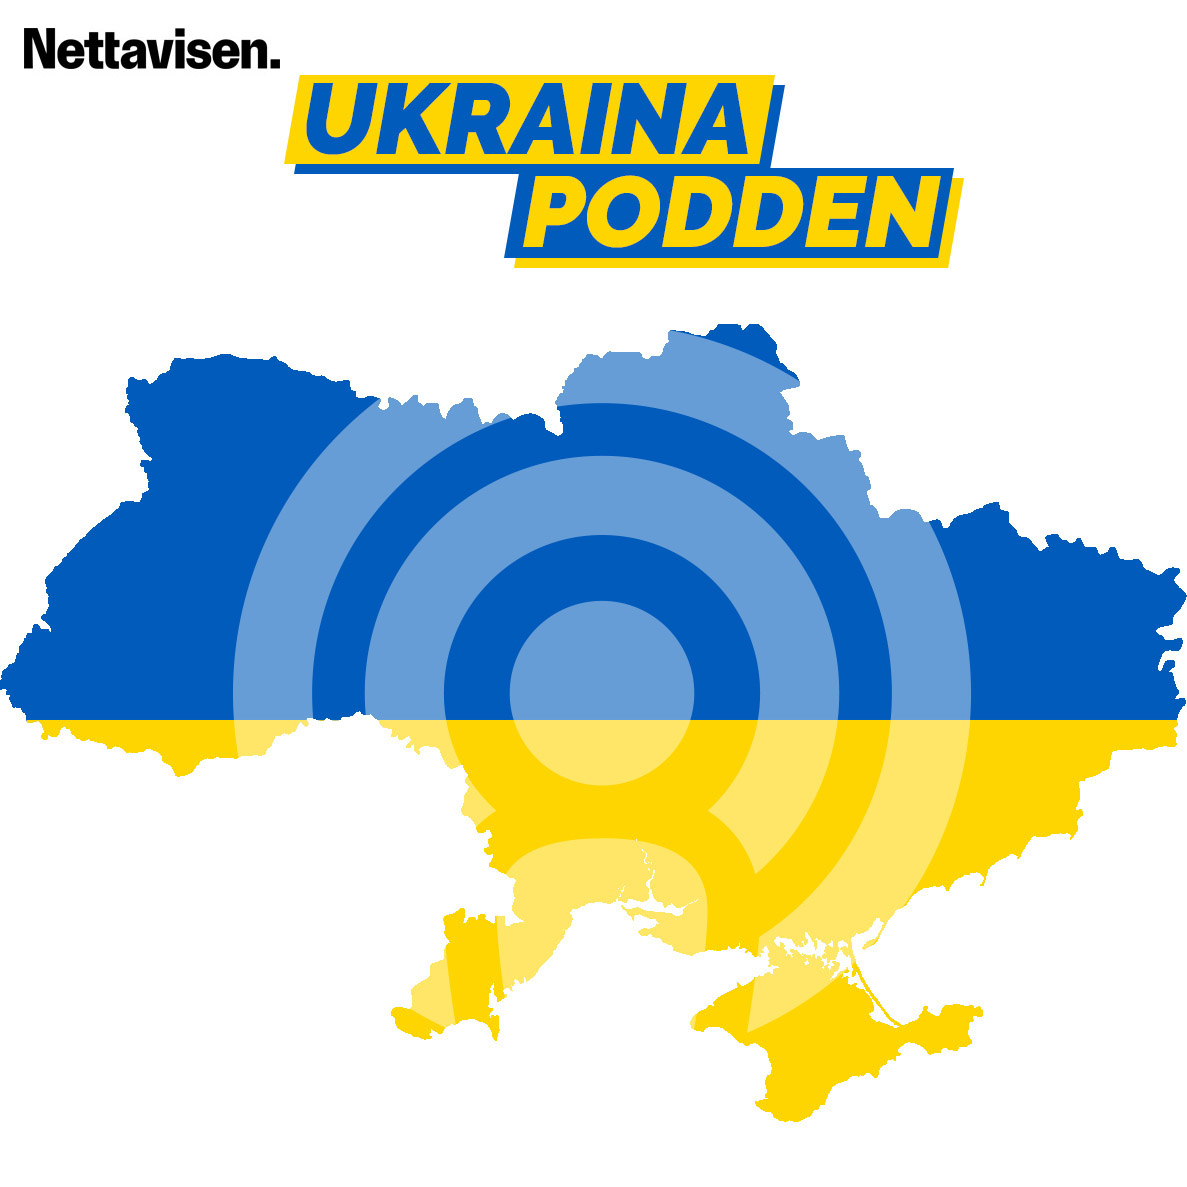 Skjebnevalg på tirsdag kan avgjøre Ukrainas fremtid. Gjest: Eirik Løkke